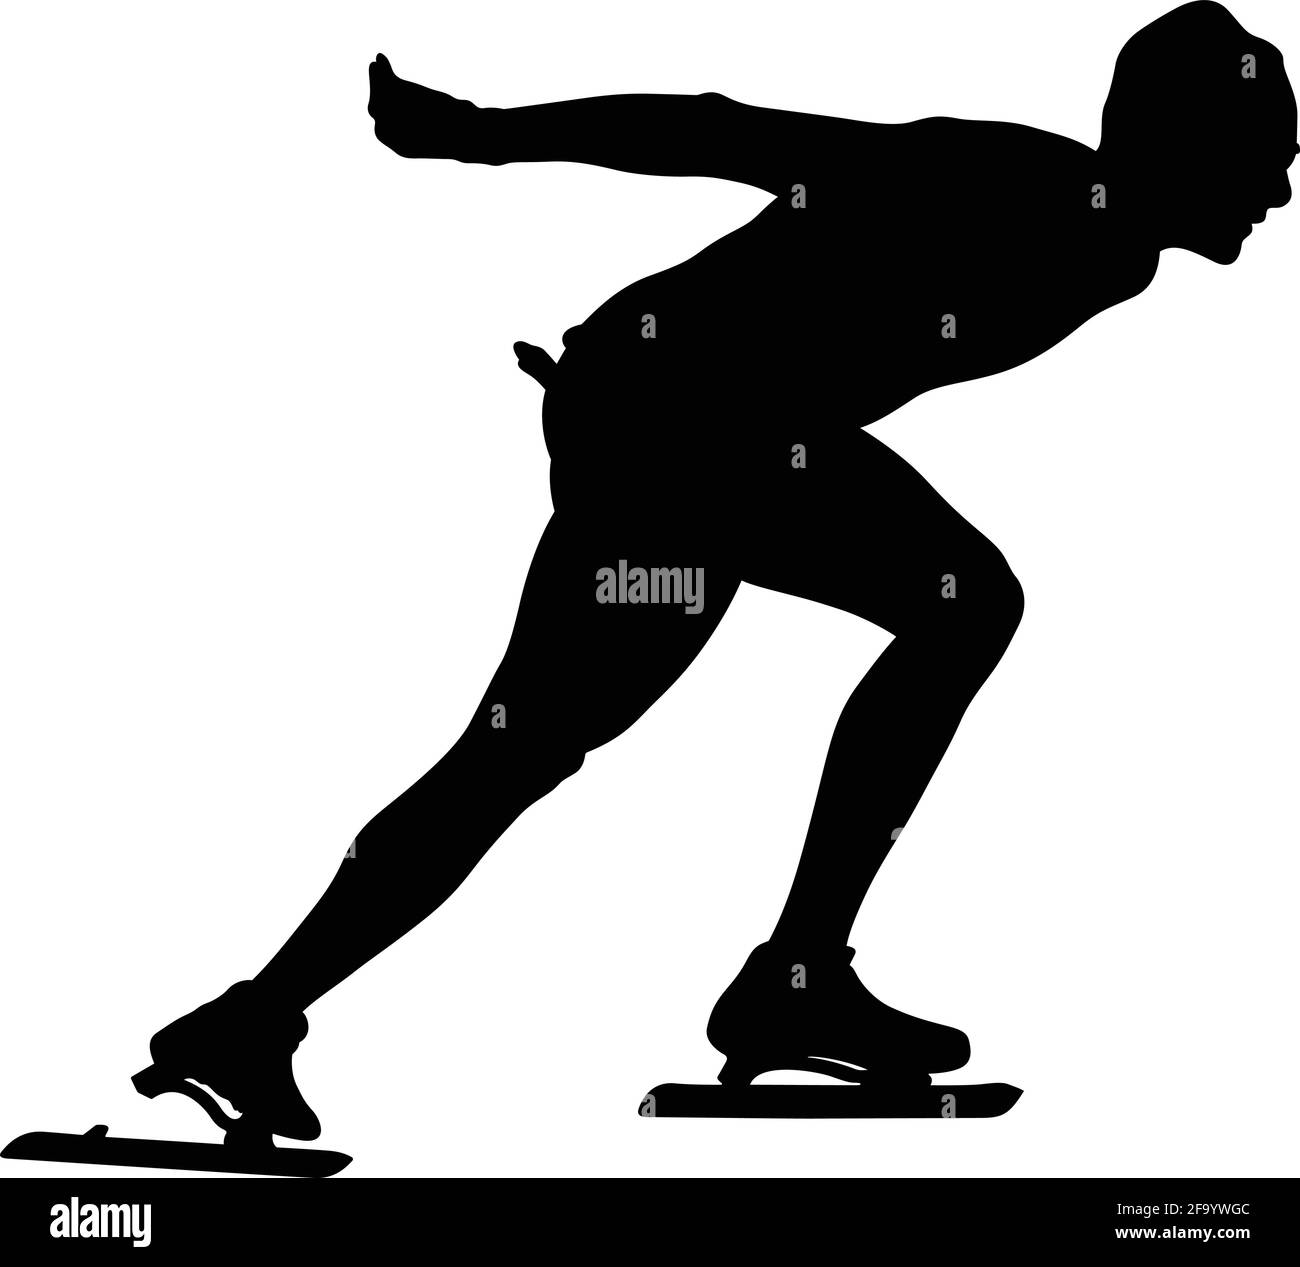 speedskater athlete black silhouette on white background Stock Vector